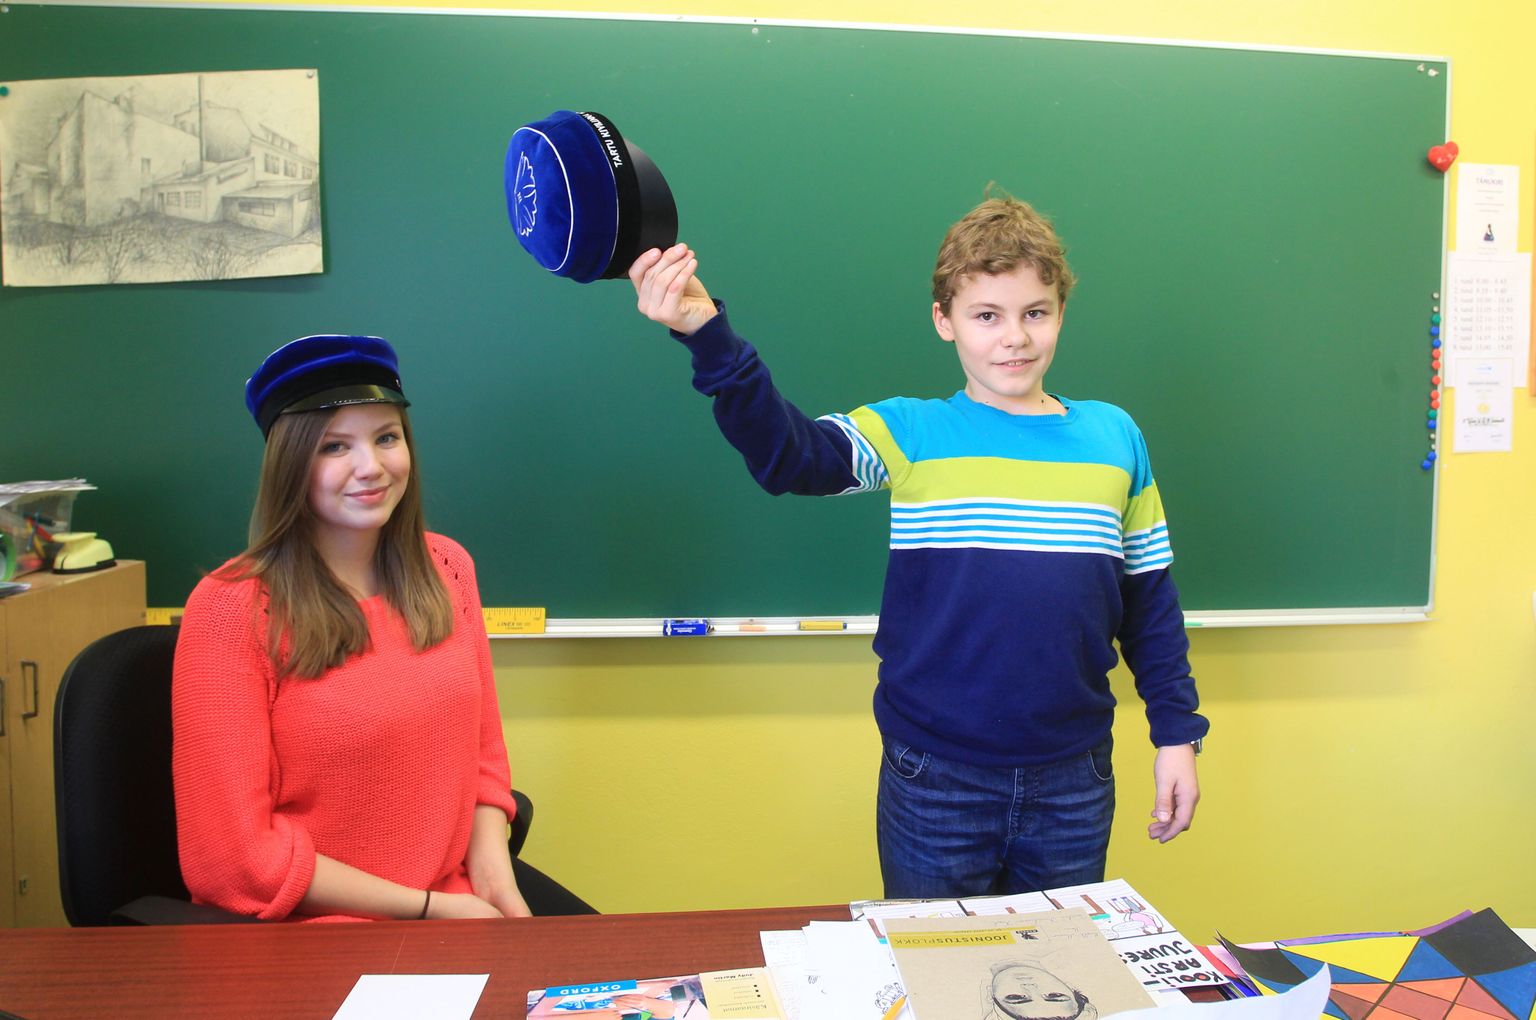 Kivilinna kooli õpilased Katriin Sepma ja Martin Ottas näitasid eile lahkelt oma kooli mütse, mille tellimine praegu käib. Katriin Sepma peas olev läikiva nokaga müts kasutusse ei tule, koolipere eelistas mati nokaga mütsi, millega harjutas tervitamist Martin Ottas.